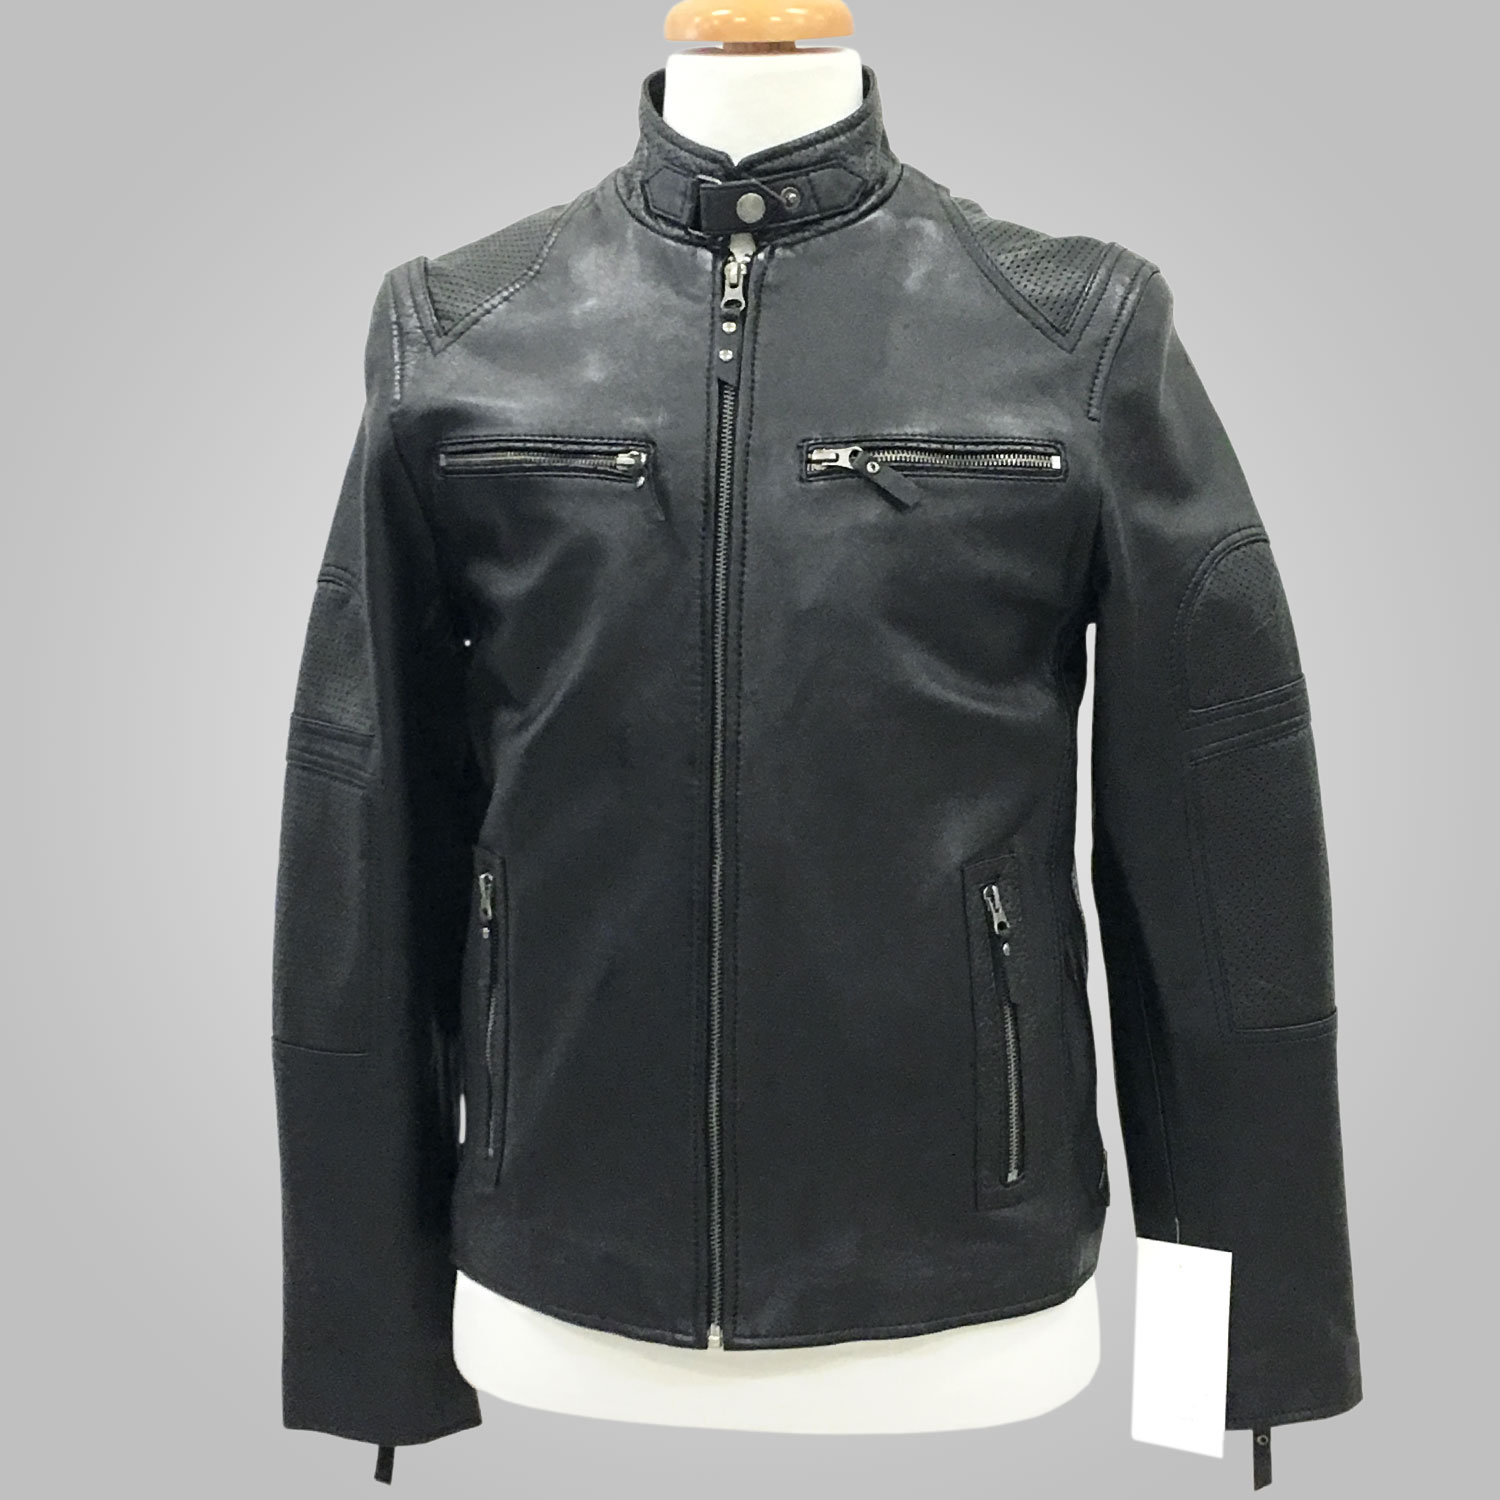 Black Leather Jacket - Black Washington 001 - L'Aurore Leather Jacket